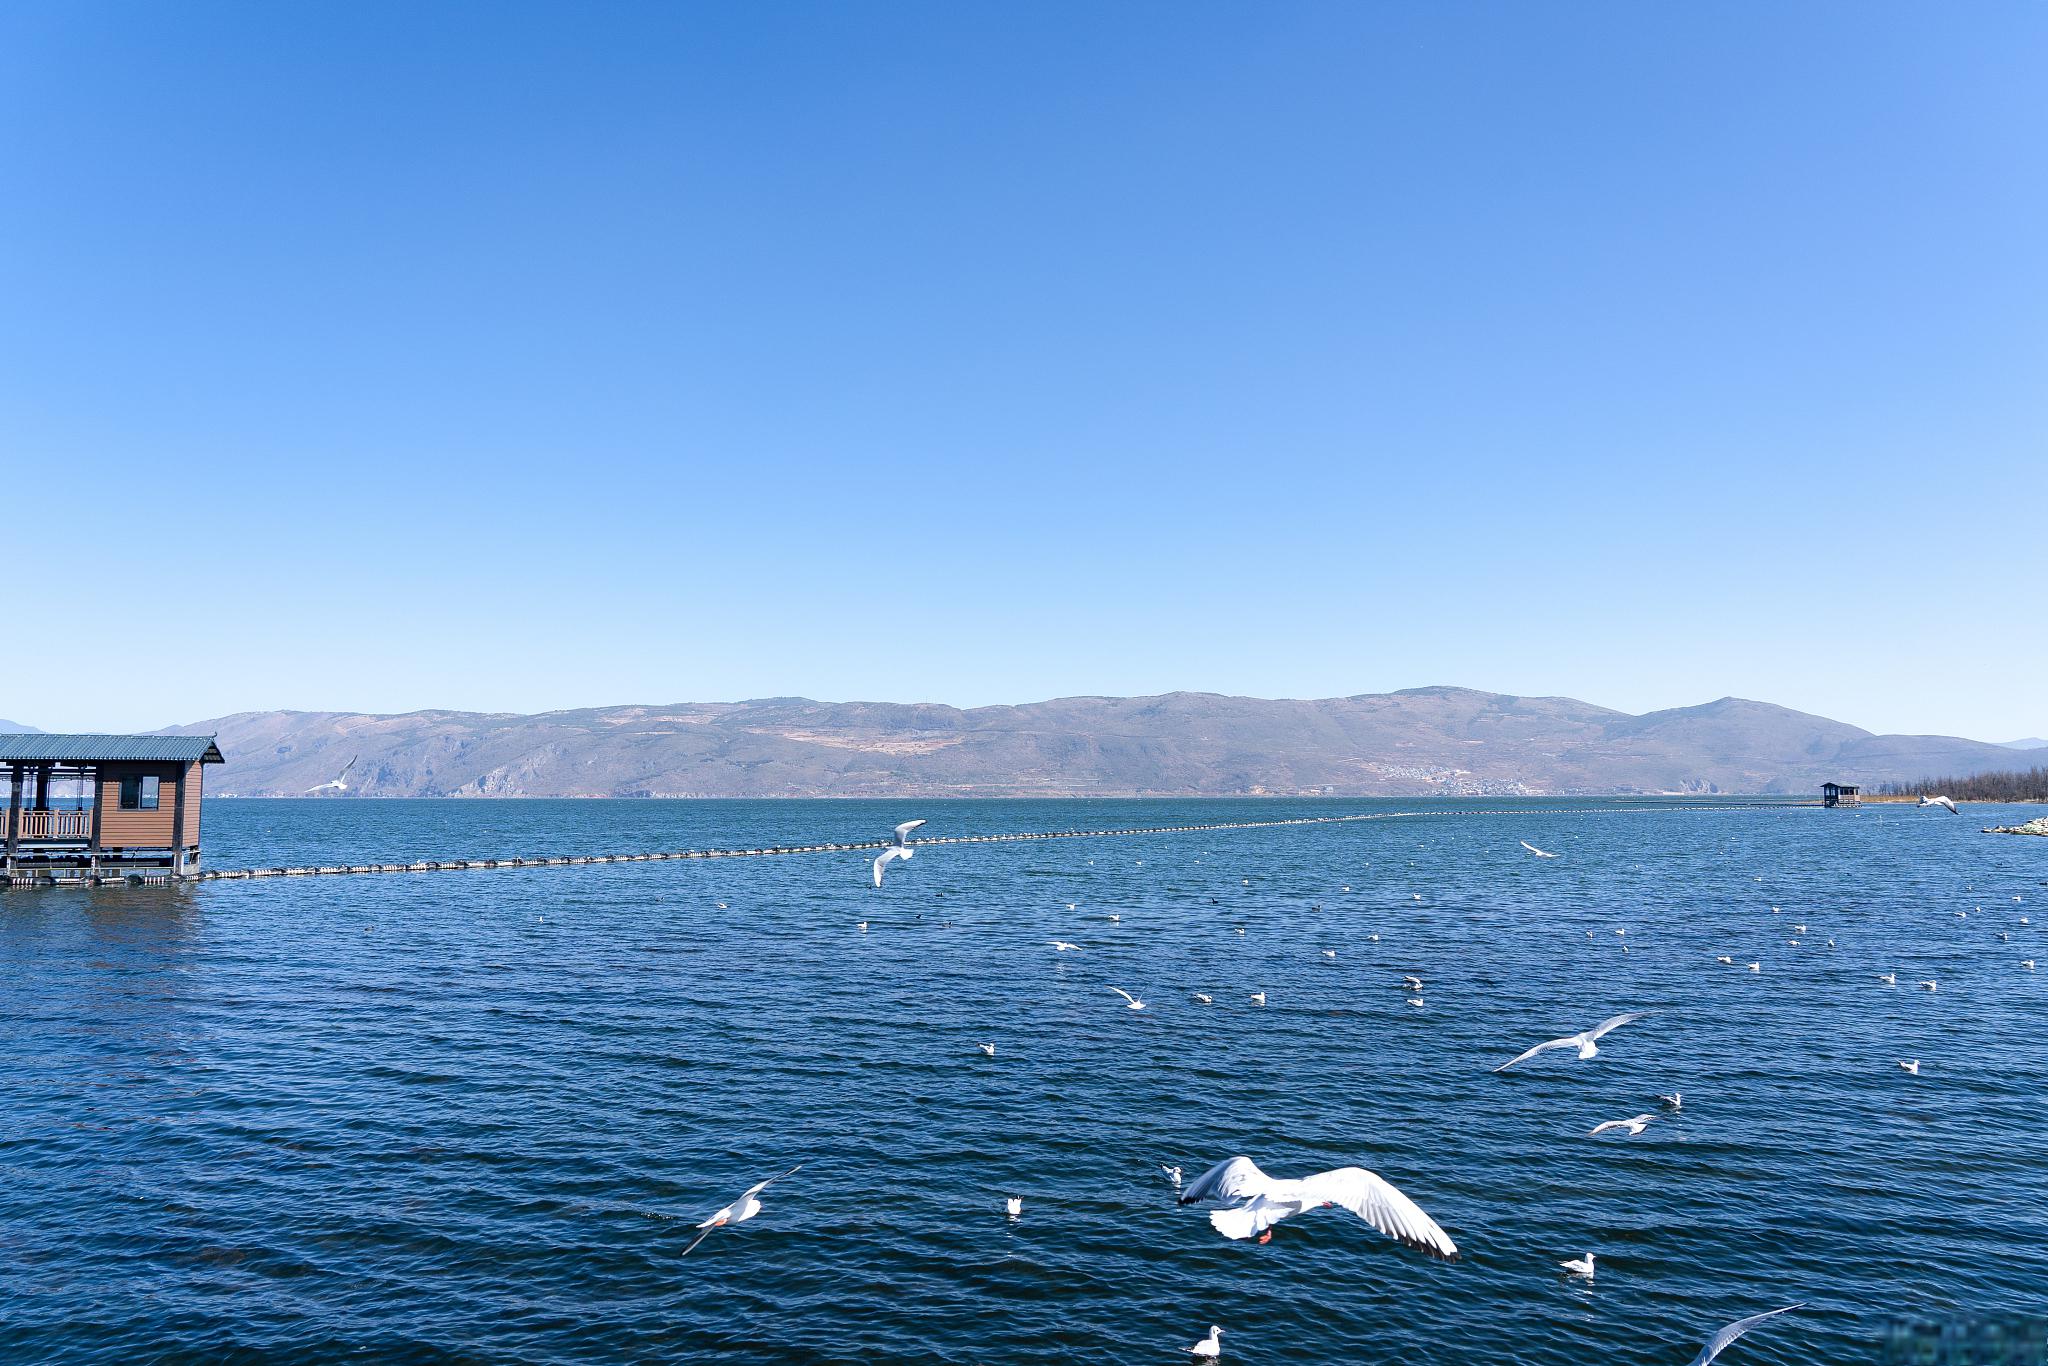 而洱海就是大理最著名的景点之一,被誉为云南最美的高原湖泊